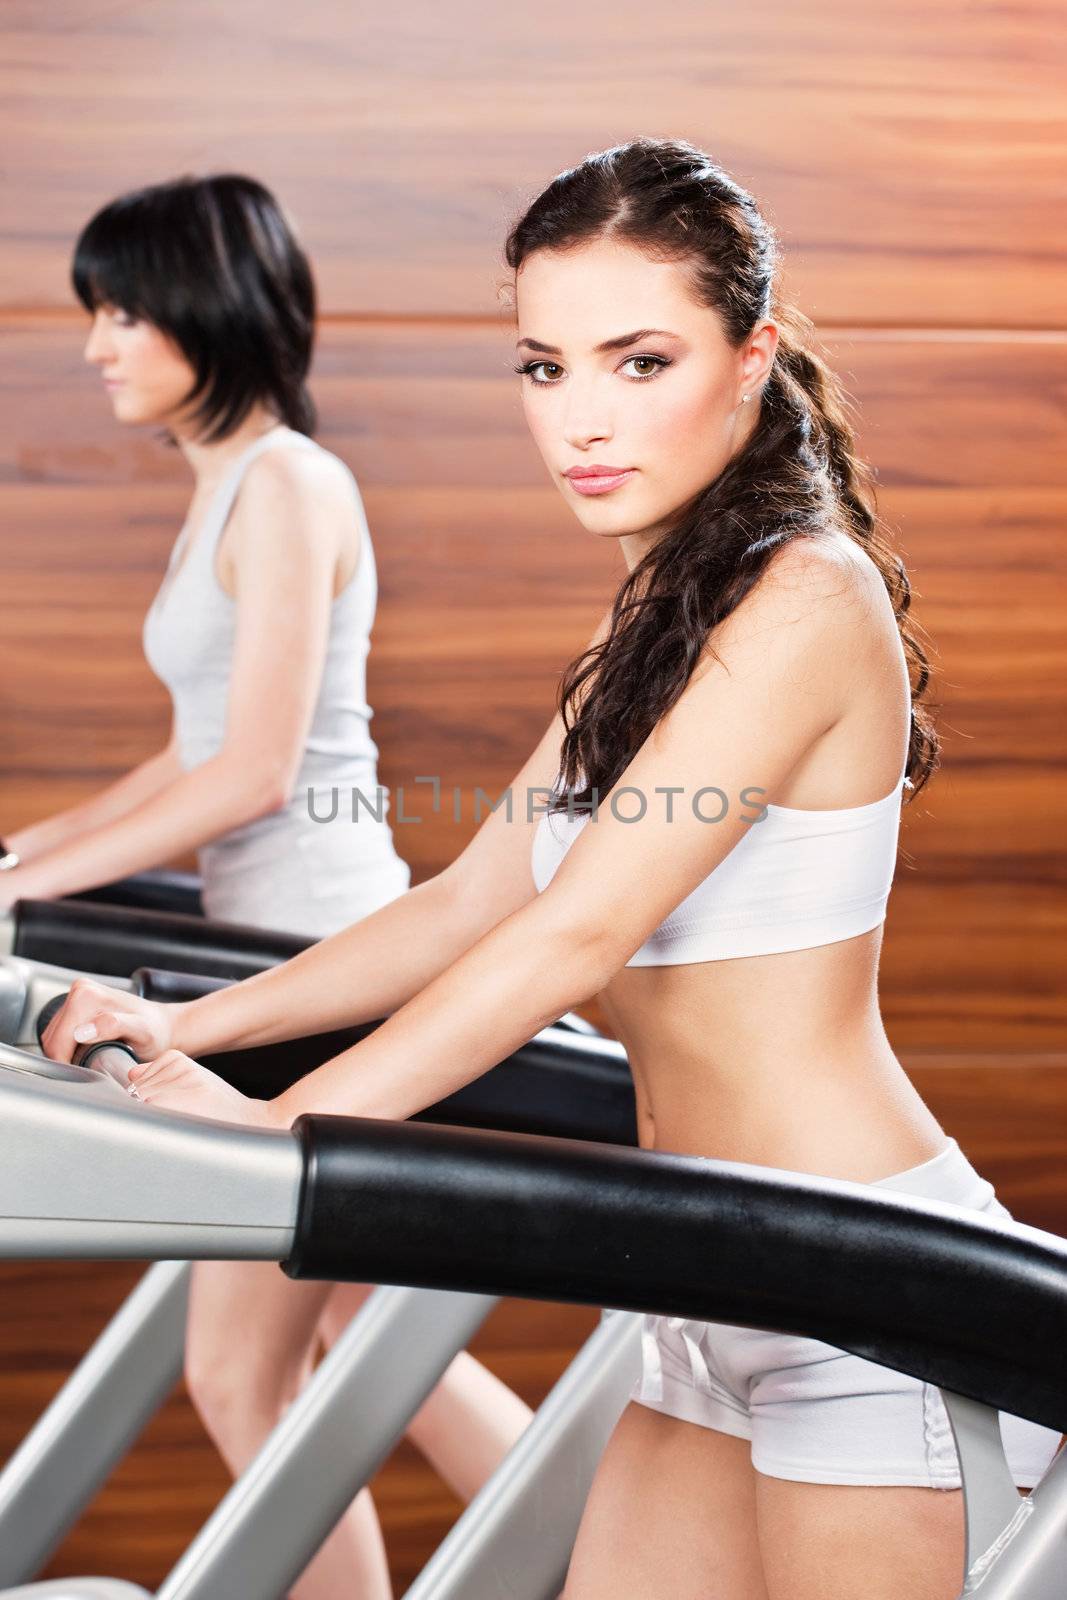 Women doing exercise in gym center